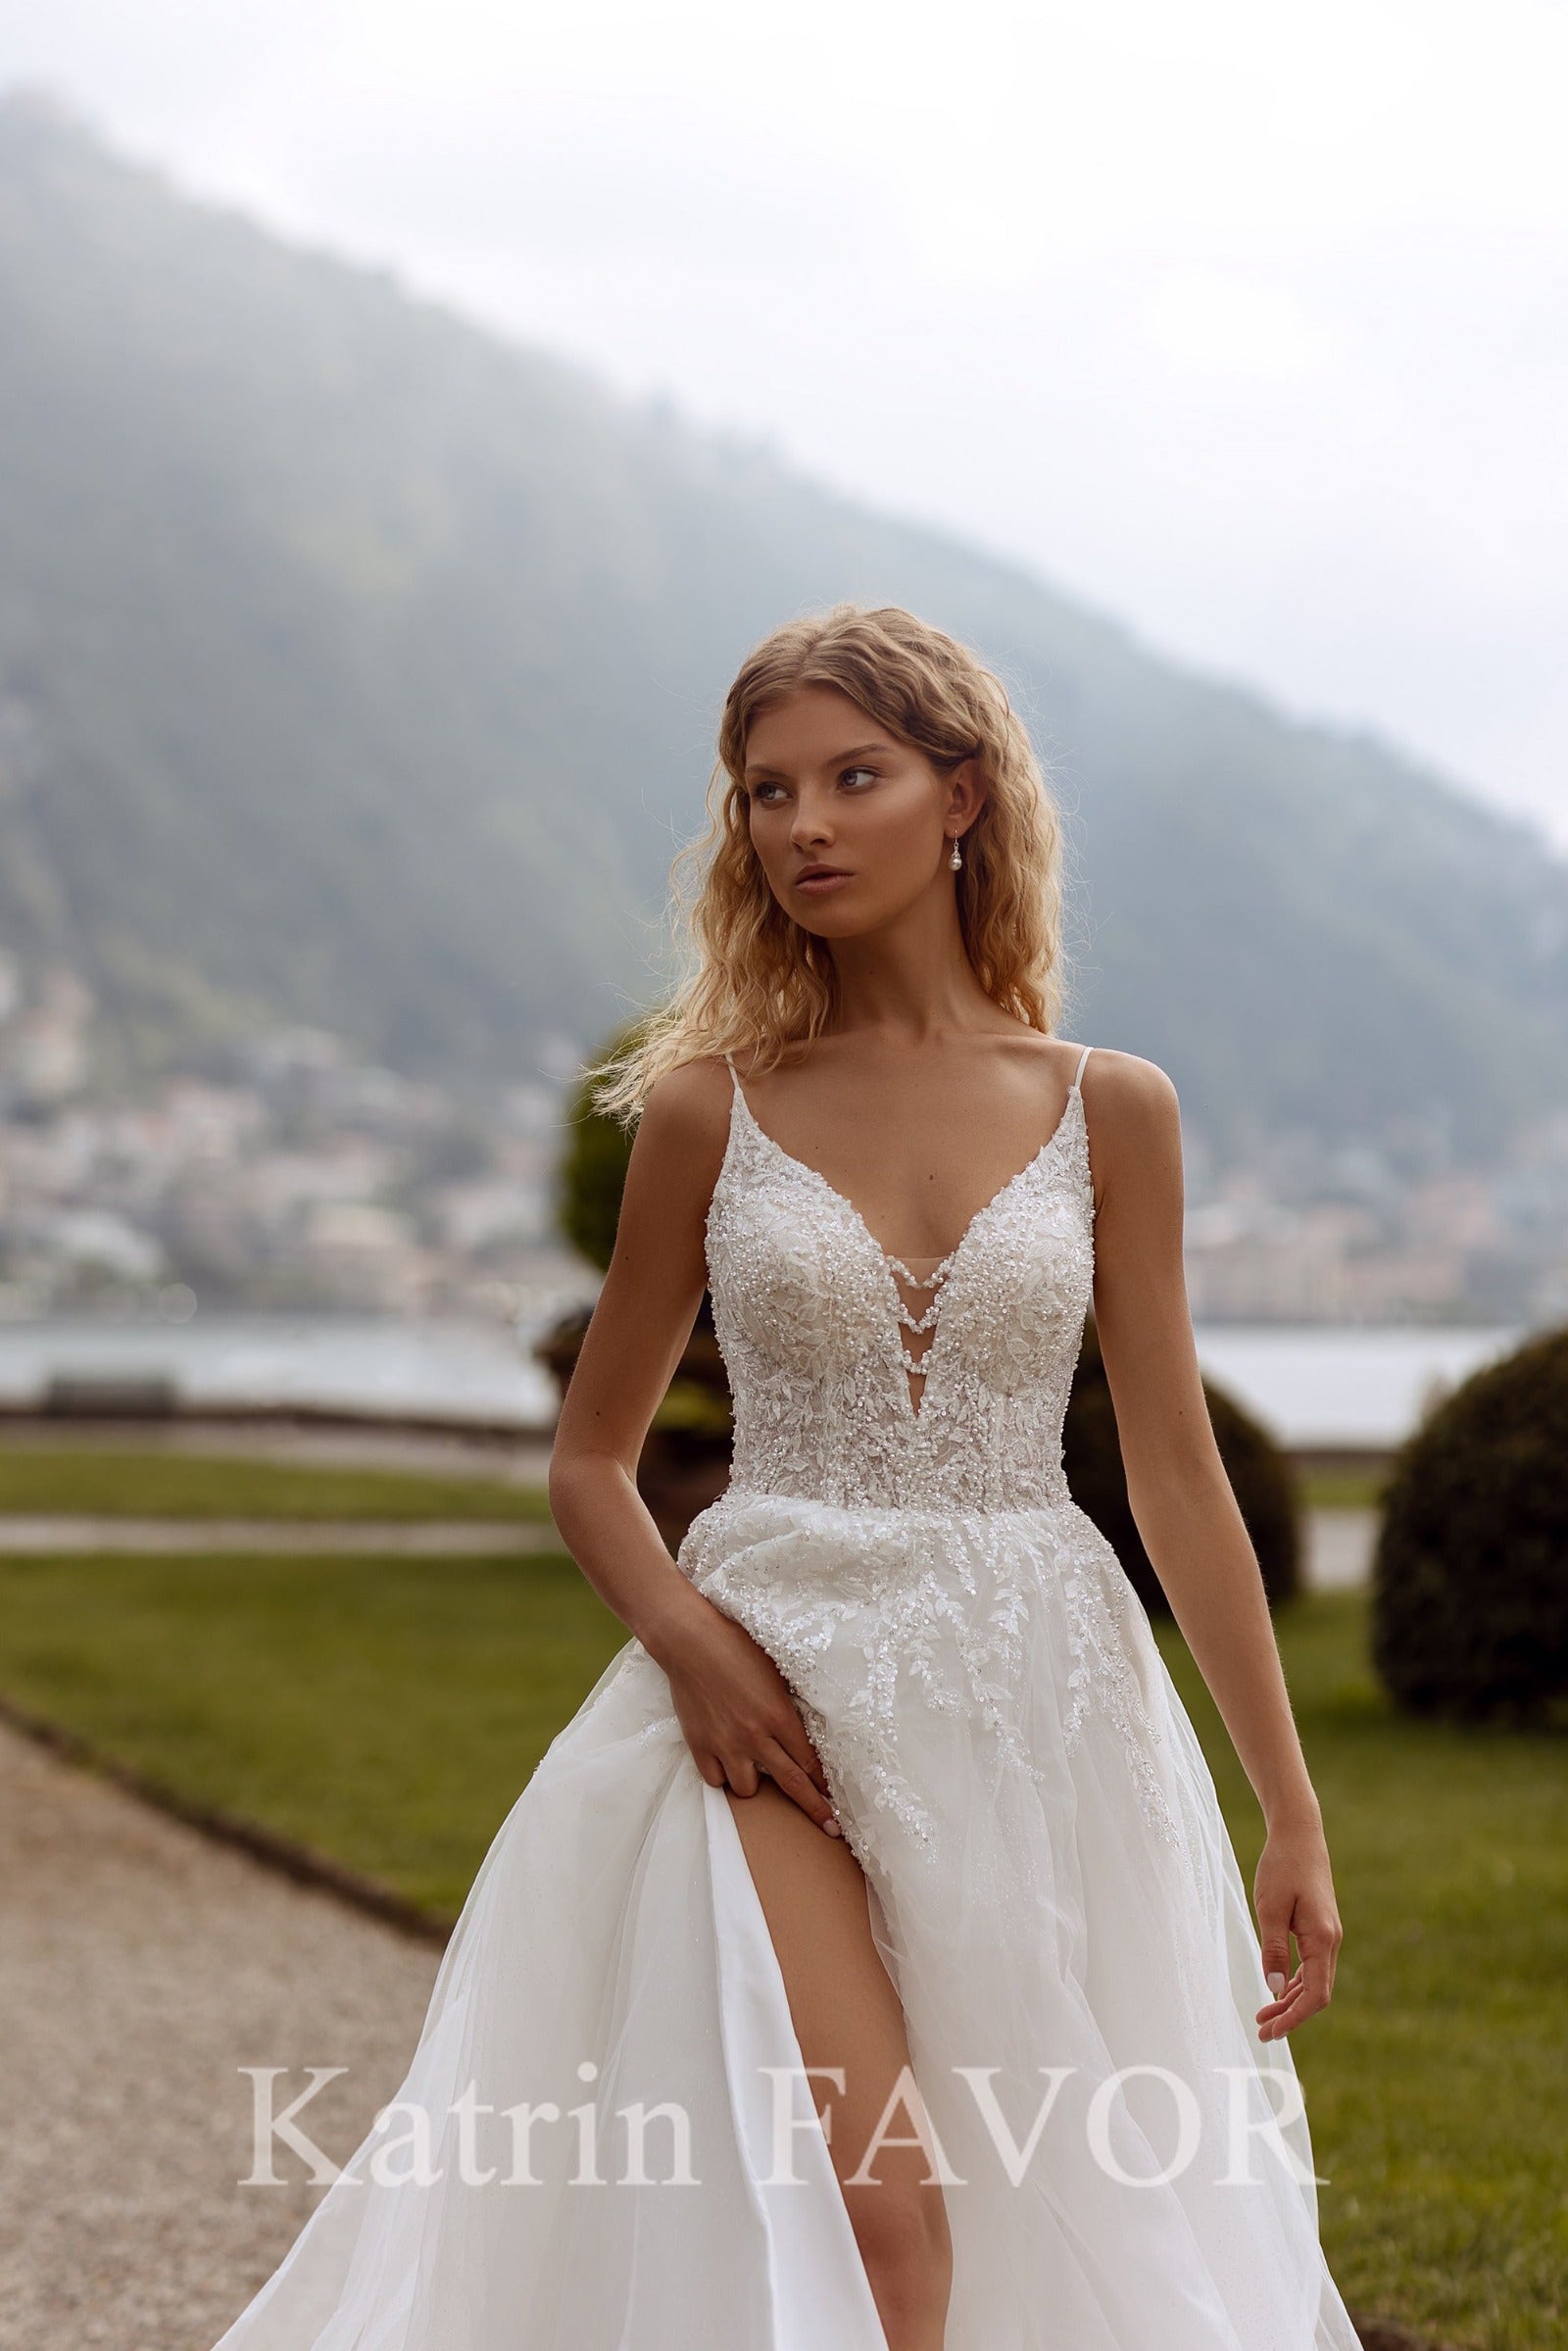 KatrinFAVORboutique-Sparkle tulle a-line beach wedding dress